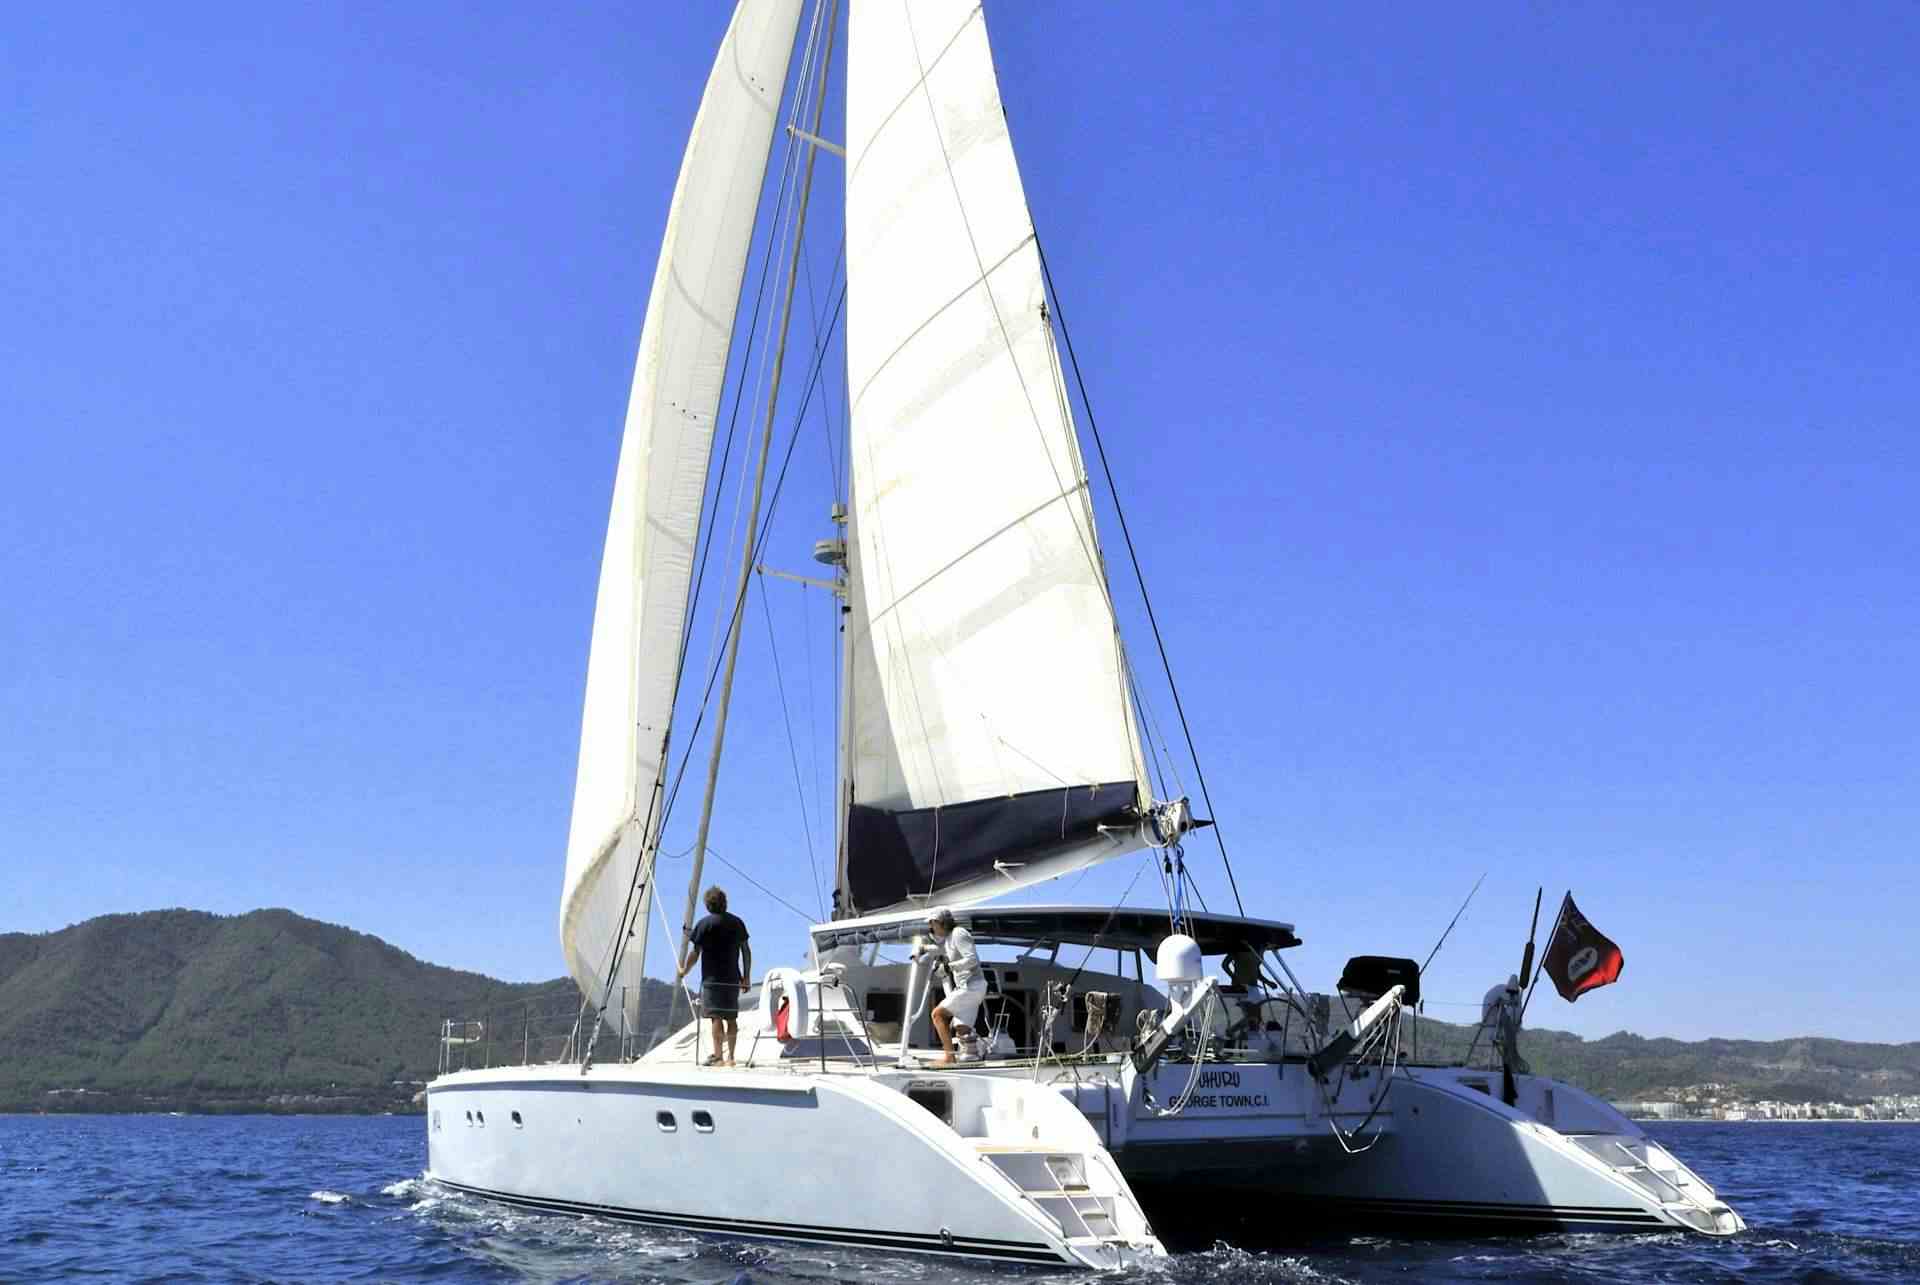 uhuru - Catamaran Charter Corfu & Boat hire in Greece 1